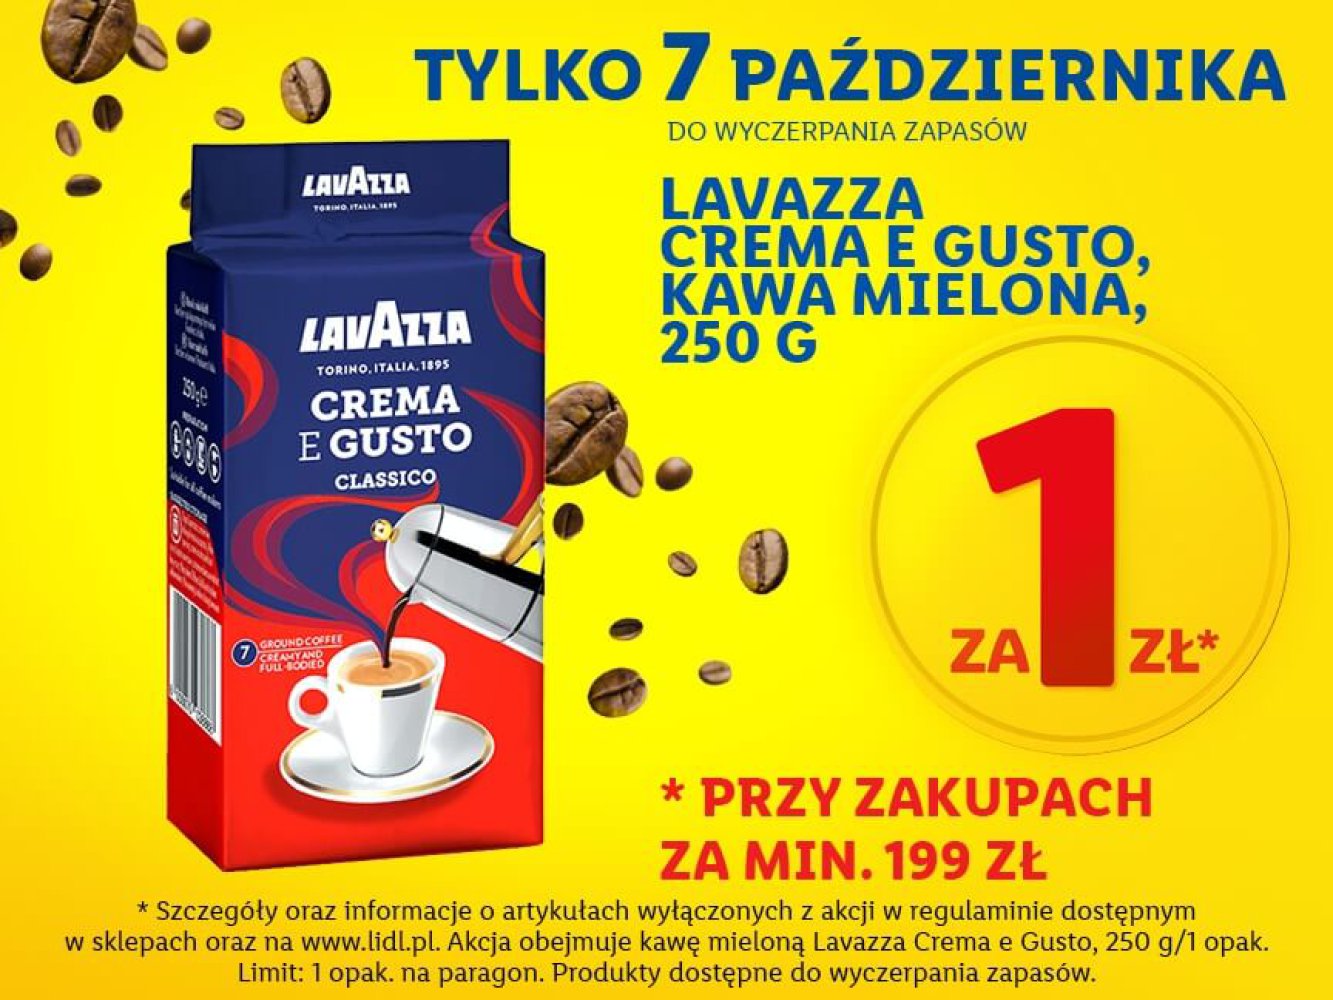 kawa Lavazza promocja 7 października Lidl